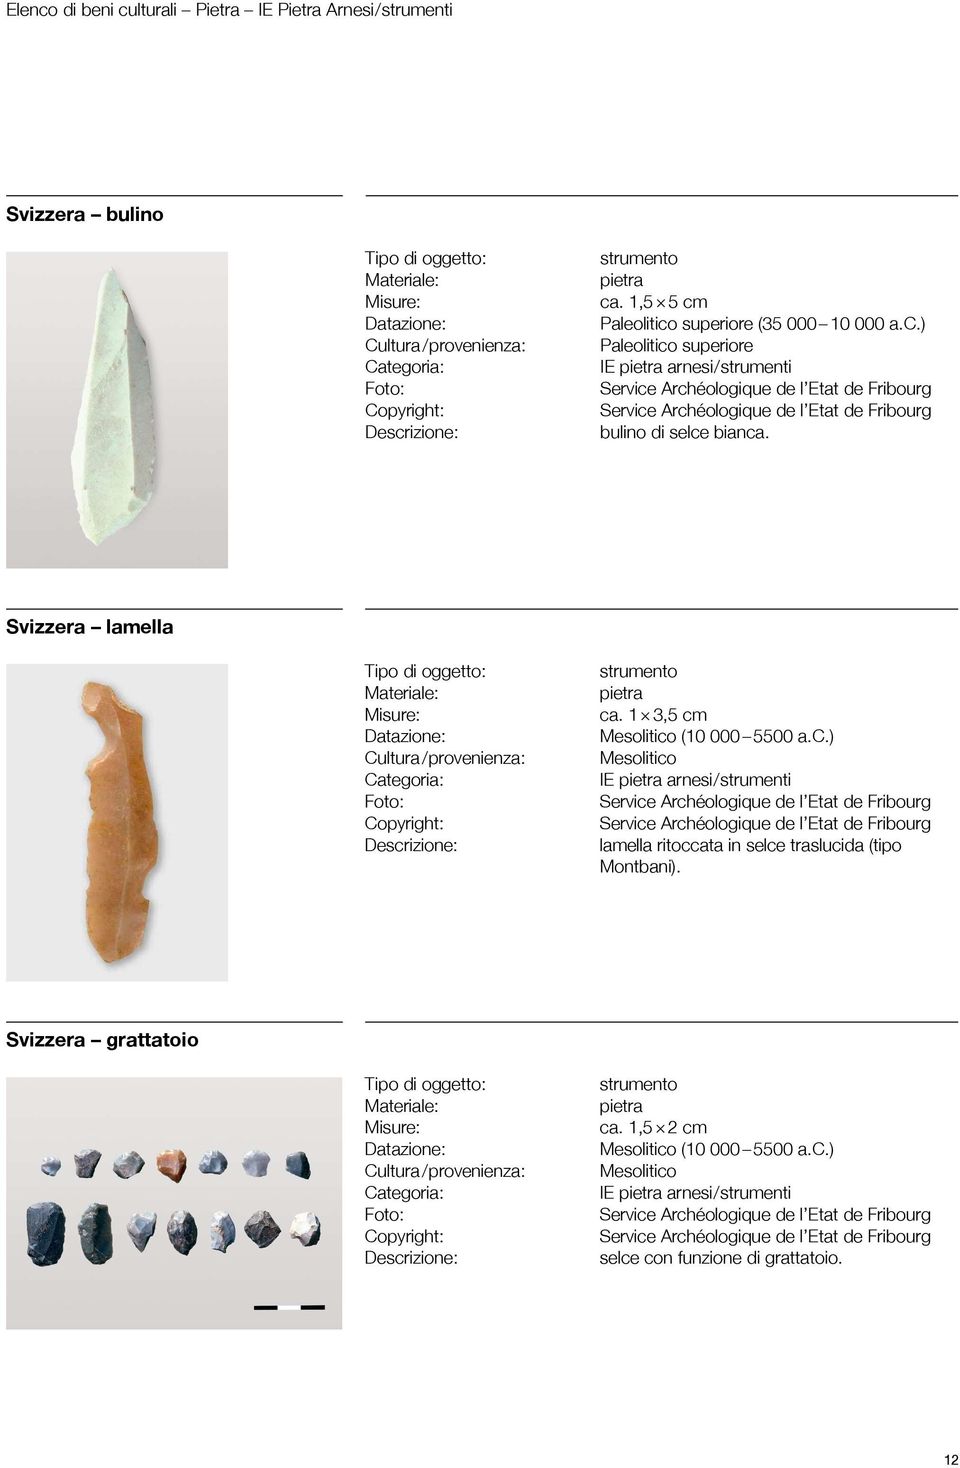 Svizzera lamella strumento pietra ca. 1 3,5 cm Mesolitico (10 000 5500 a.c.) Mesolitico IE pietra arnesi / strumenti lamella ritoccata in selce traslucida (tipo Montbani).